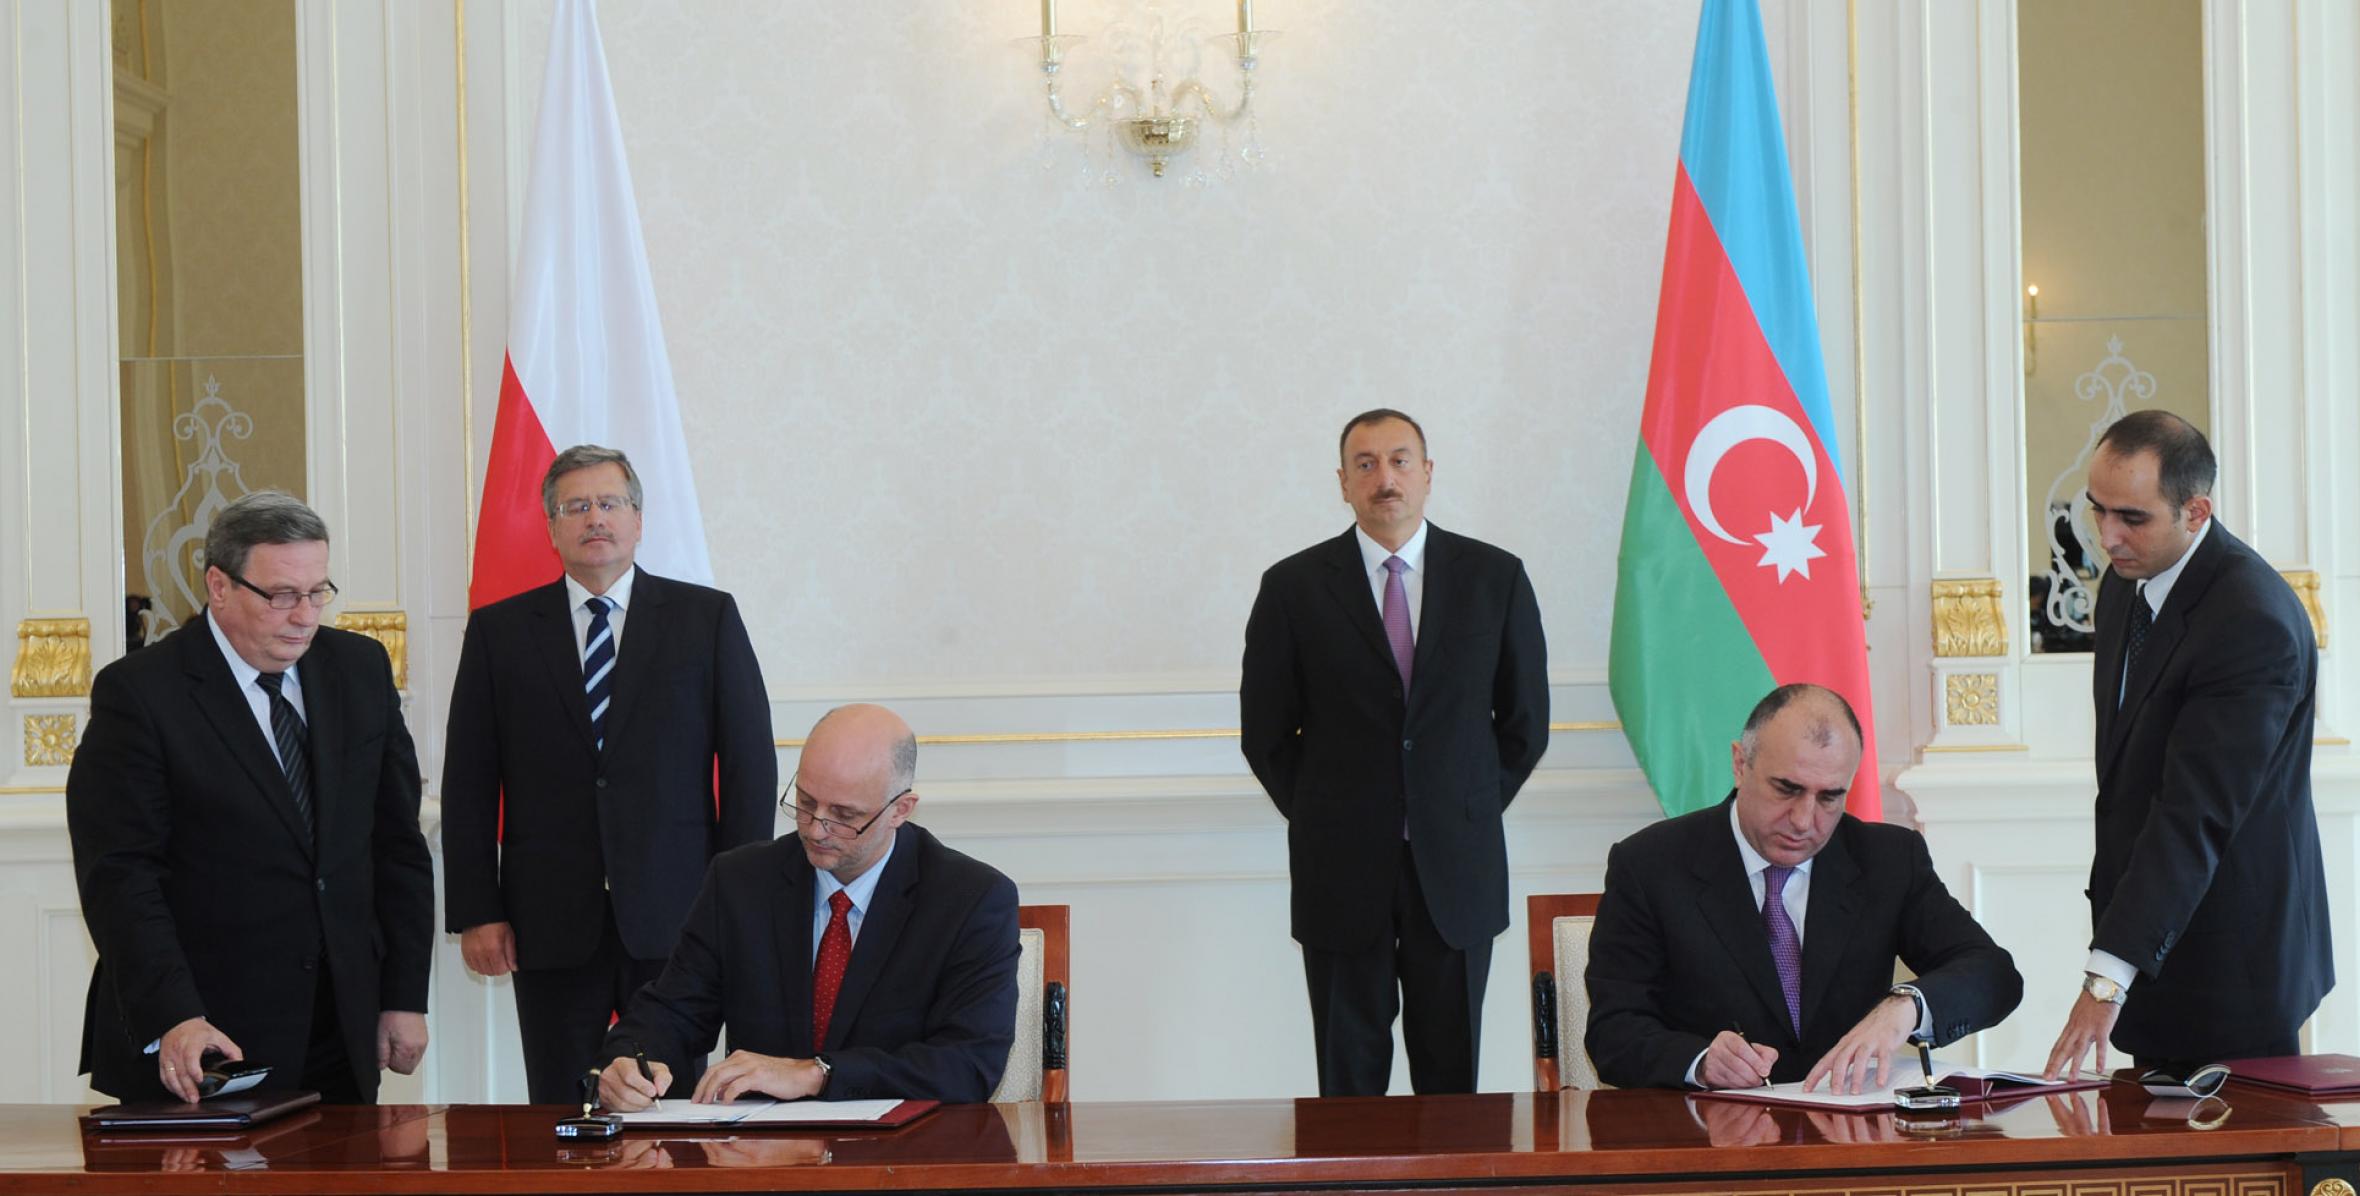 Состоялось подписание азербайджано-польских документов